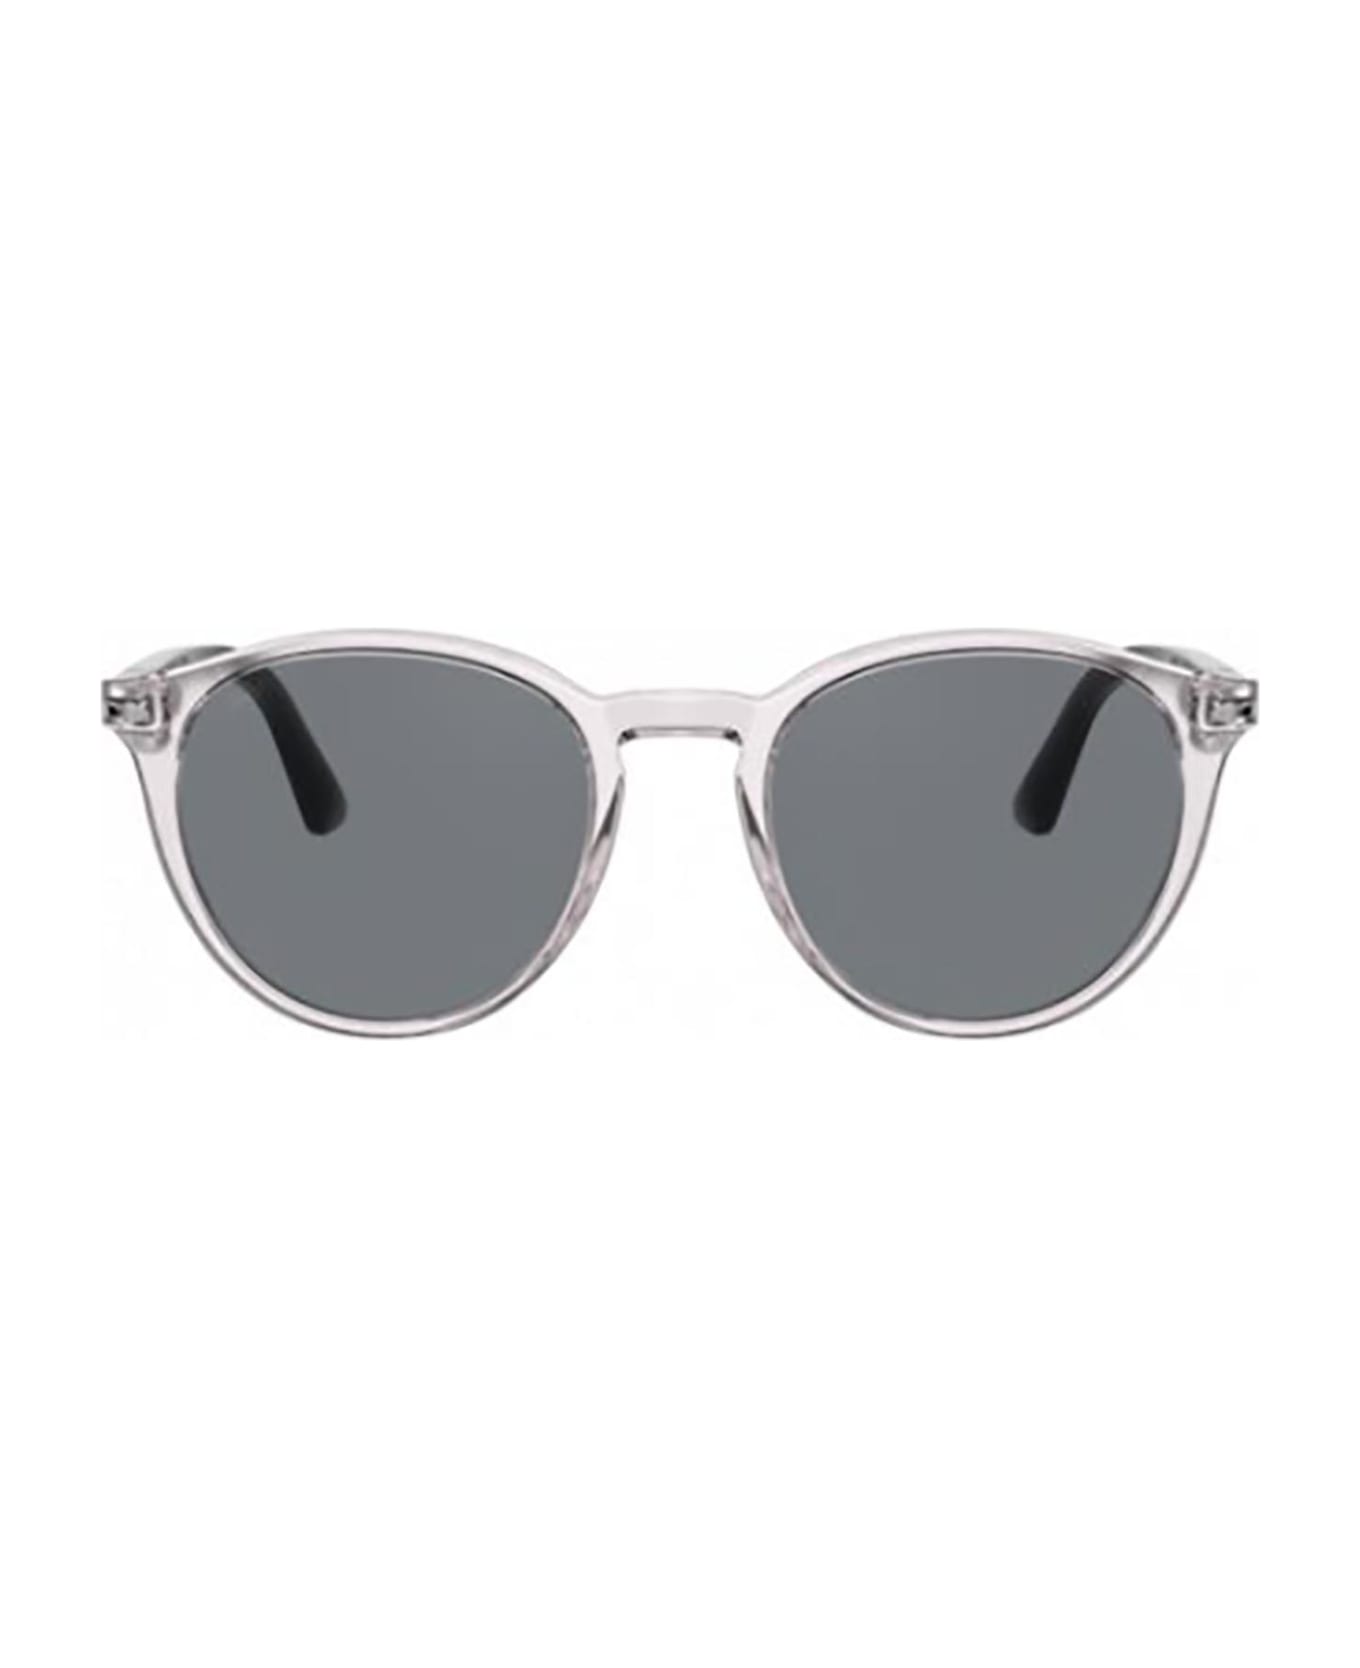 Persol Po3152s Grey Sunglasses - Grey